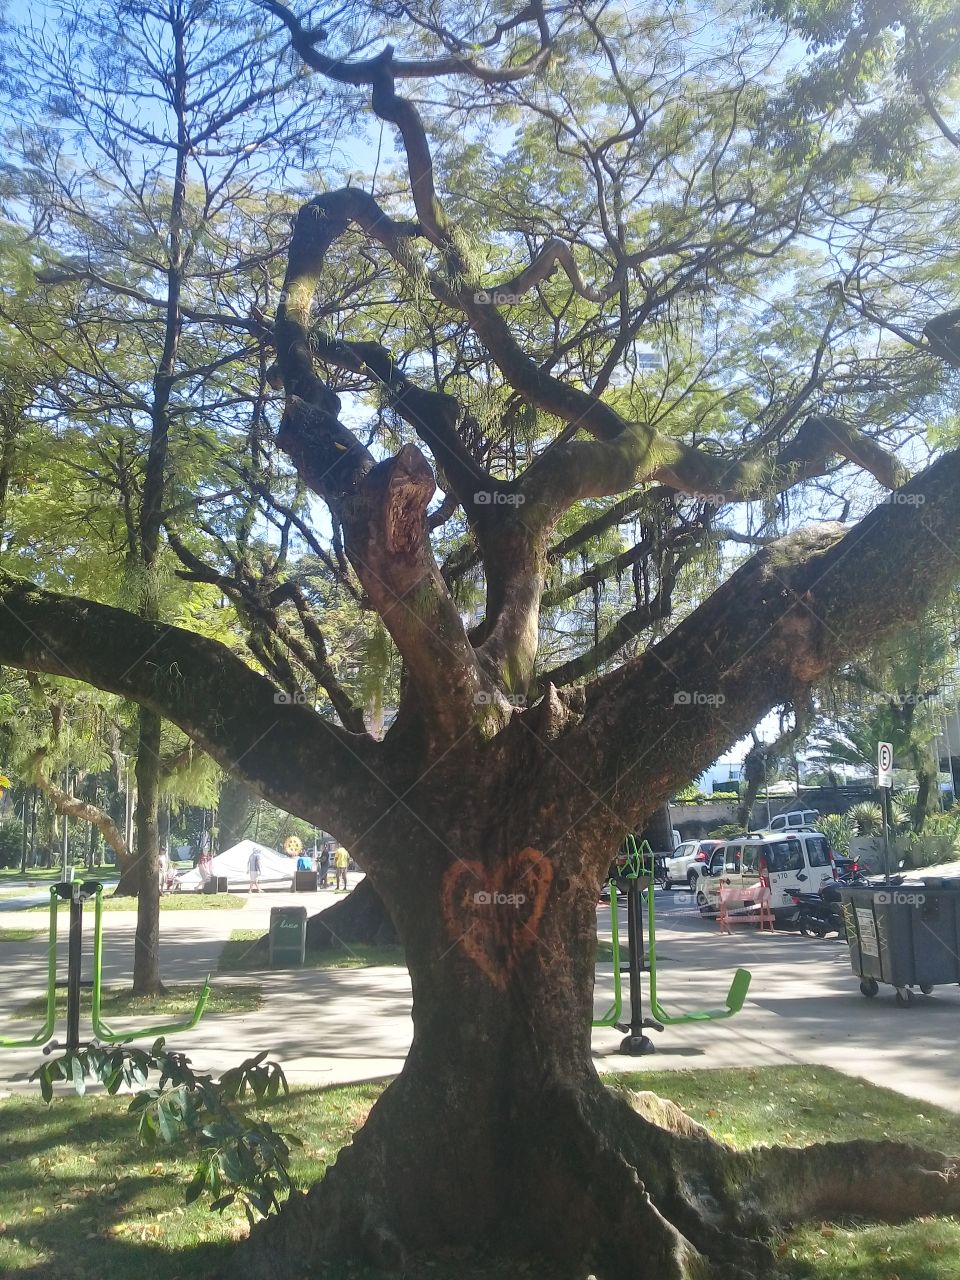 Tree in love 💖